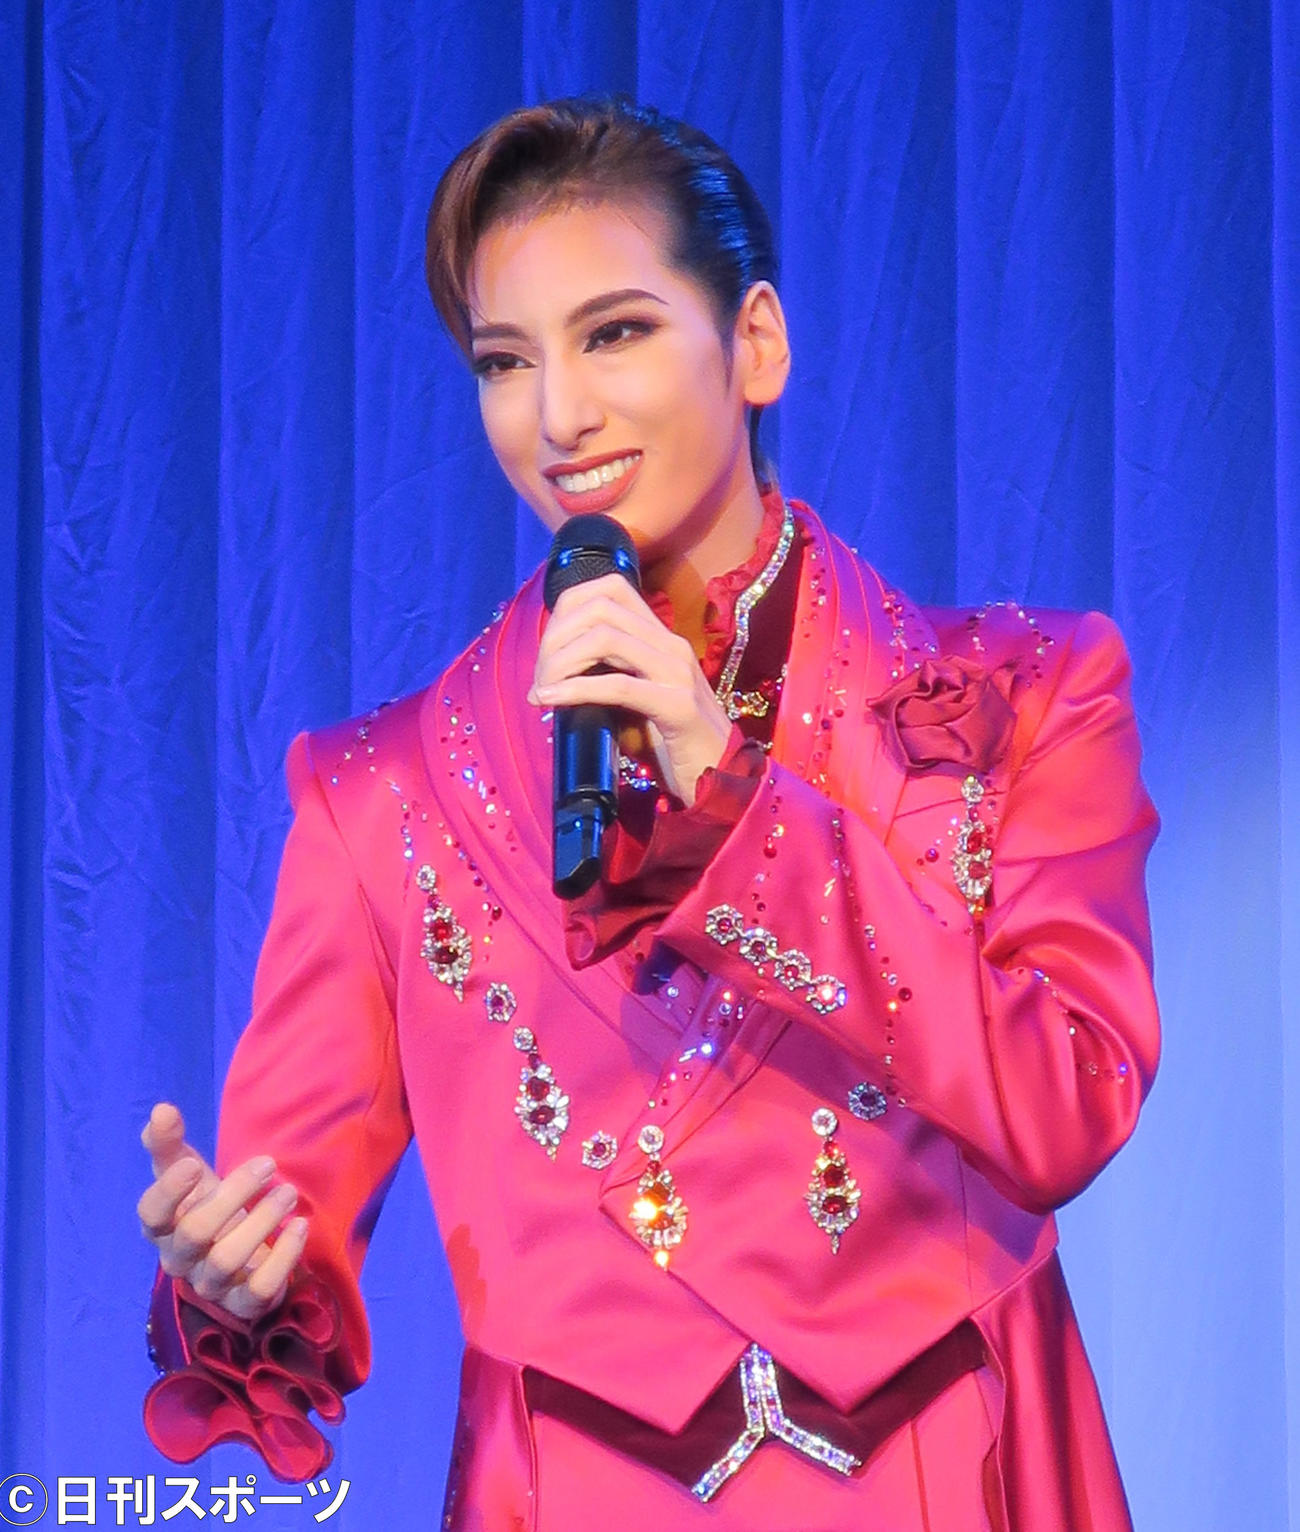 宝塚歌劇団花組公演の制作発表会で歌唱を披露するトップスター柚香光